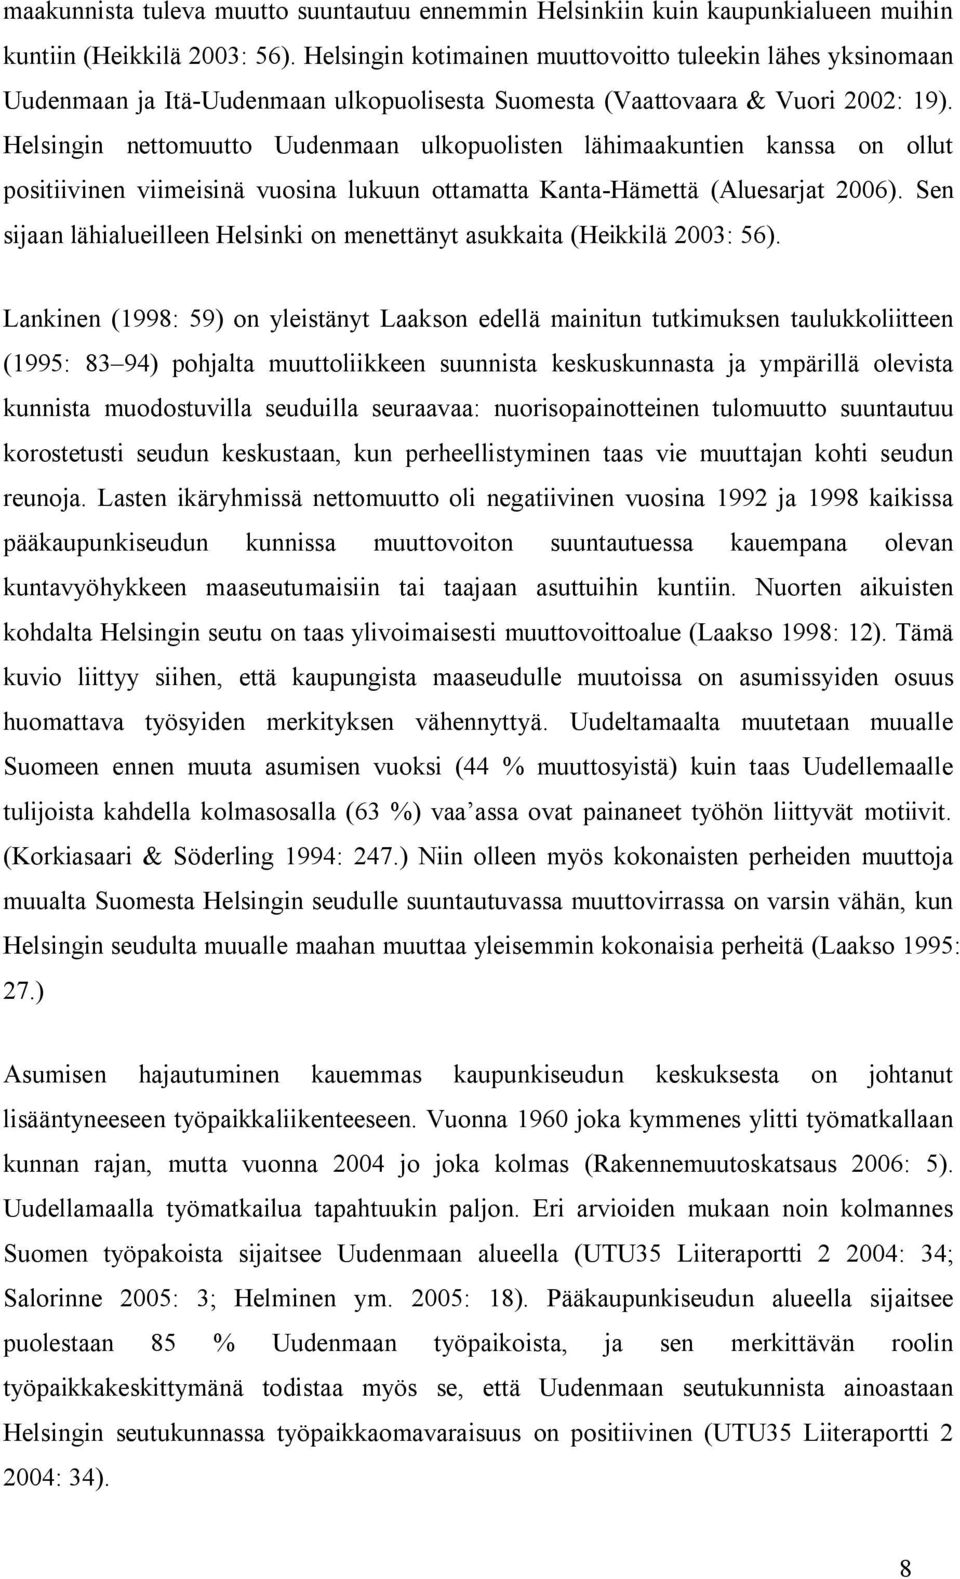 Helsingin nettomuutto Uudenmaan ulkopuolisten lähimaakuntien kanssa on ollut positiivinen viimeisinä vuosina lukuun ottamatta Kanta-Hämettä (Aluesarjat 26).